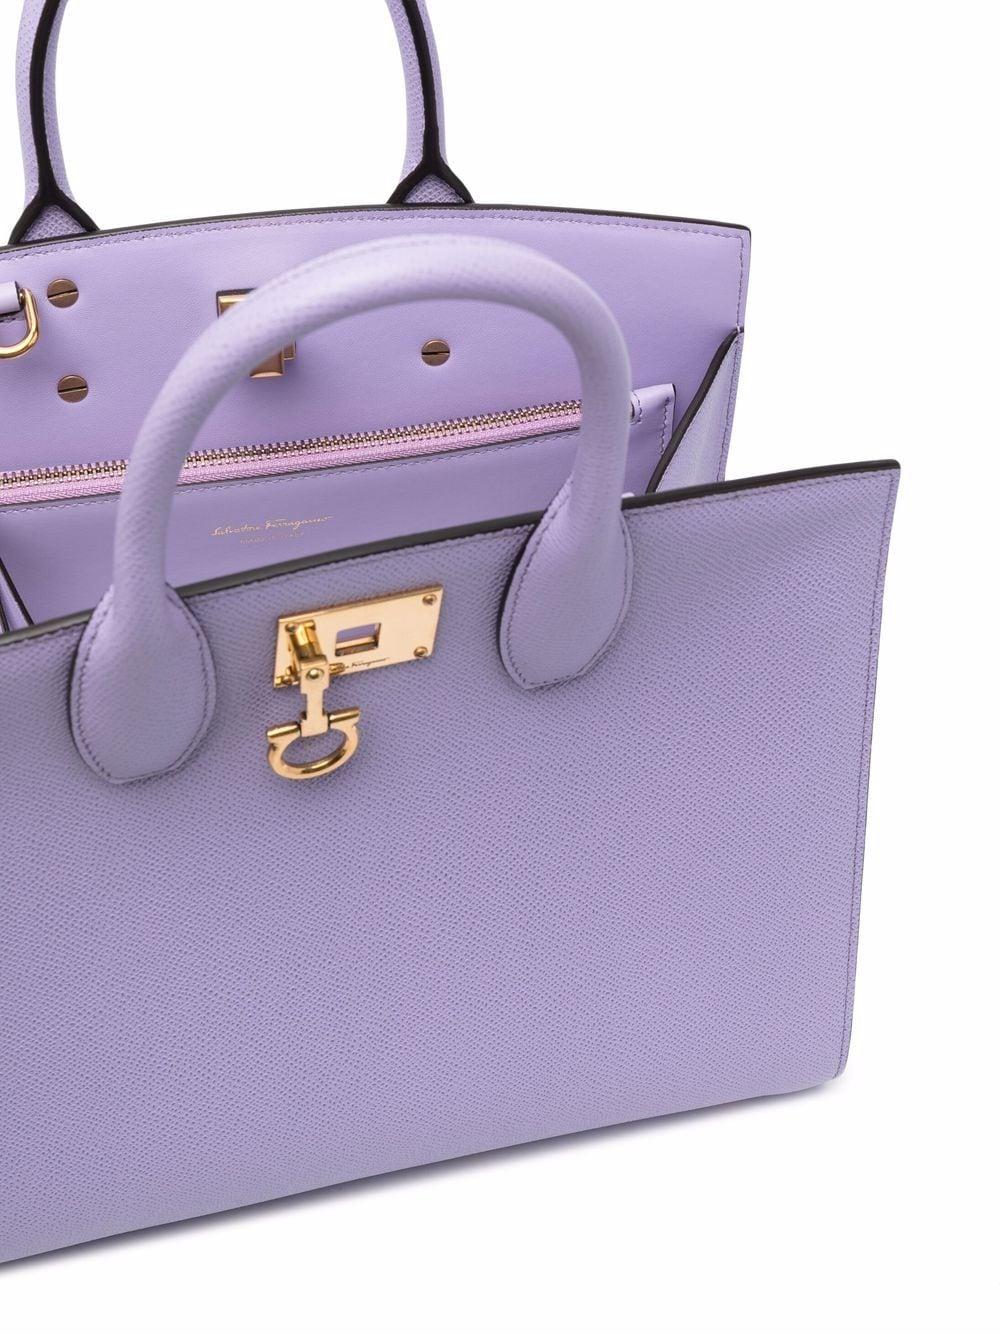 Ferragamo The Studio Tote Bag in Purple